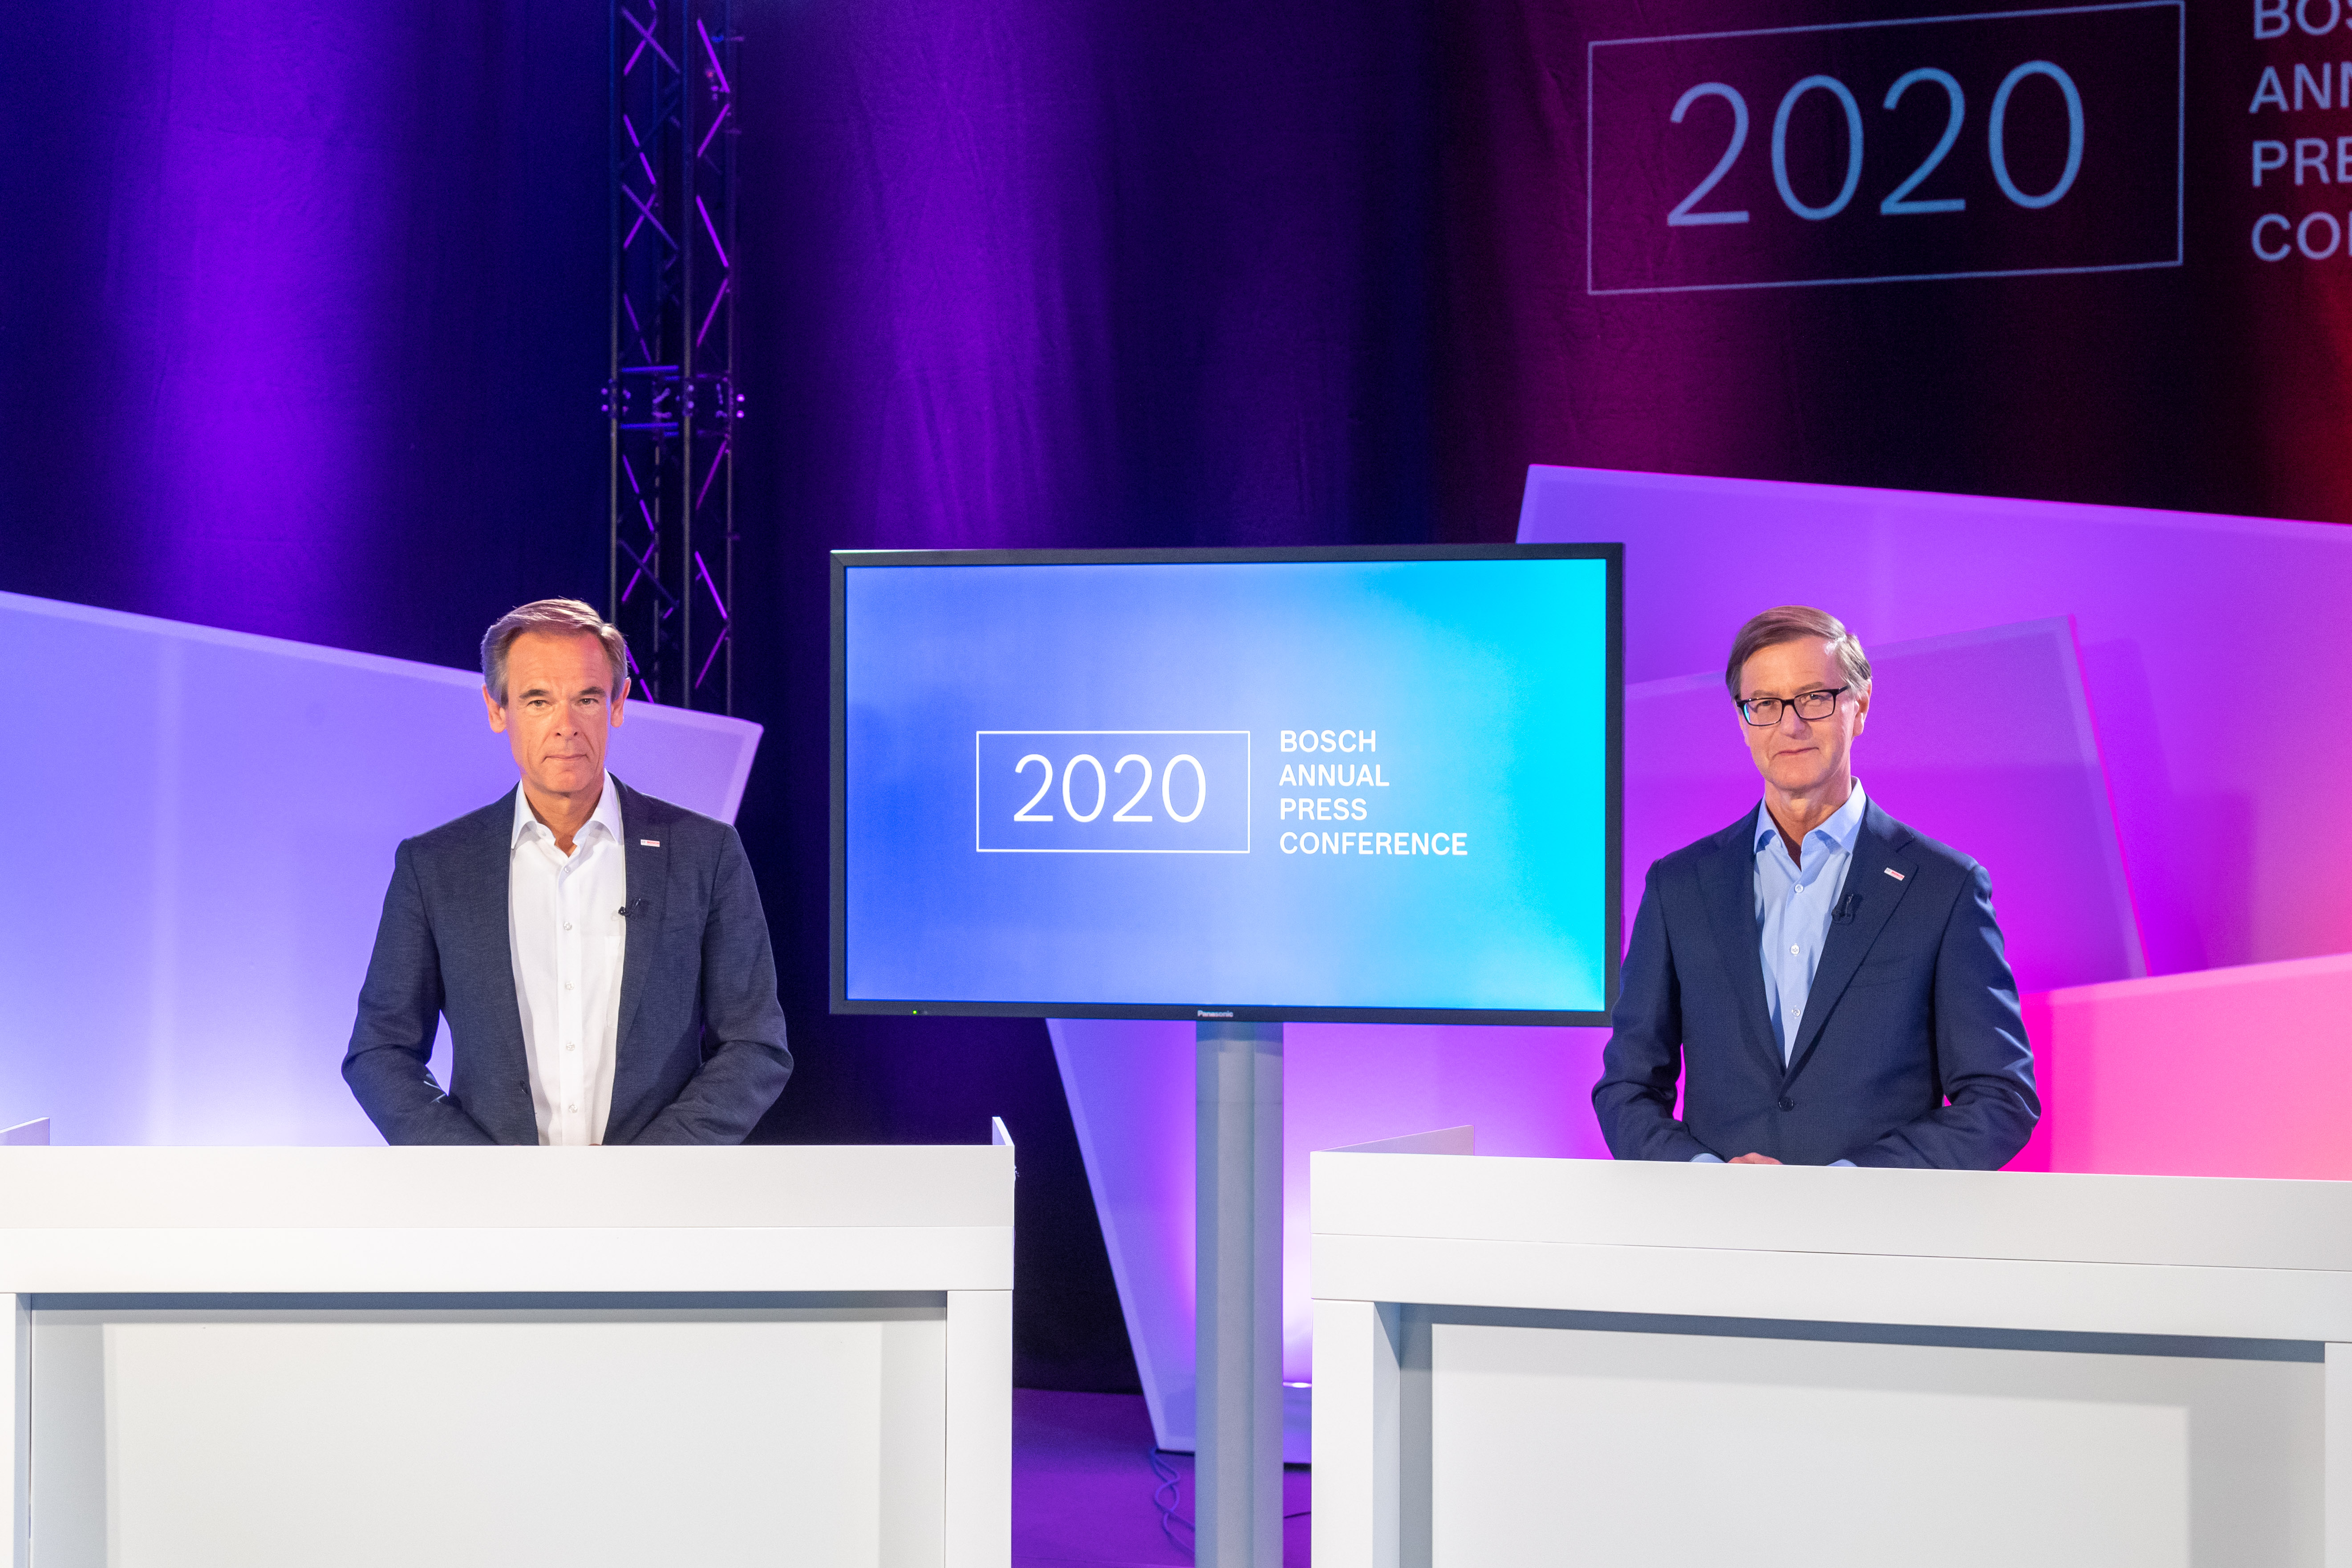 Bosch Annual press conference 2020